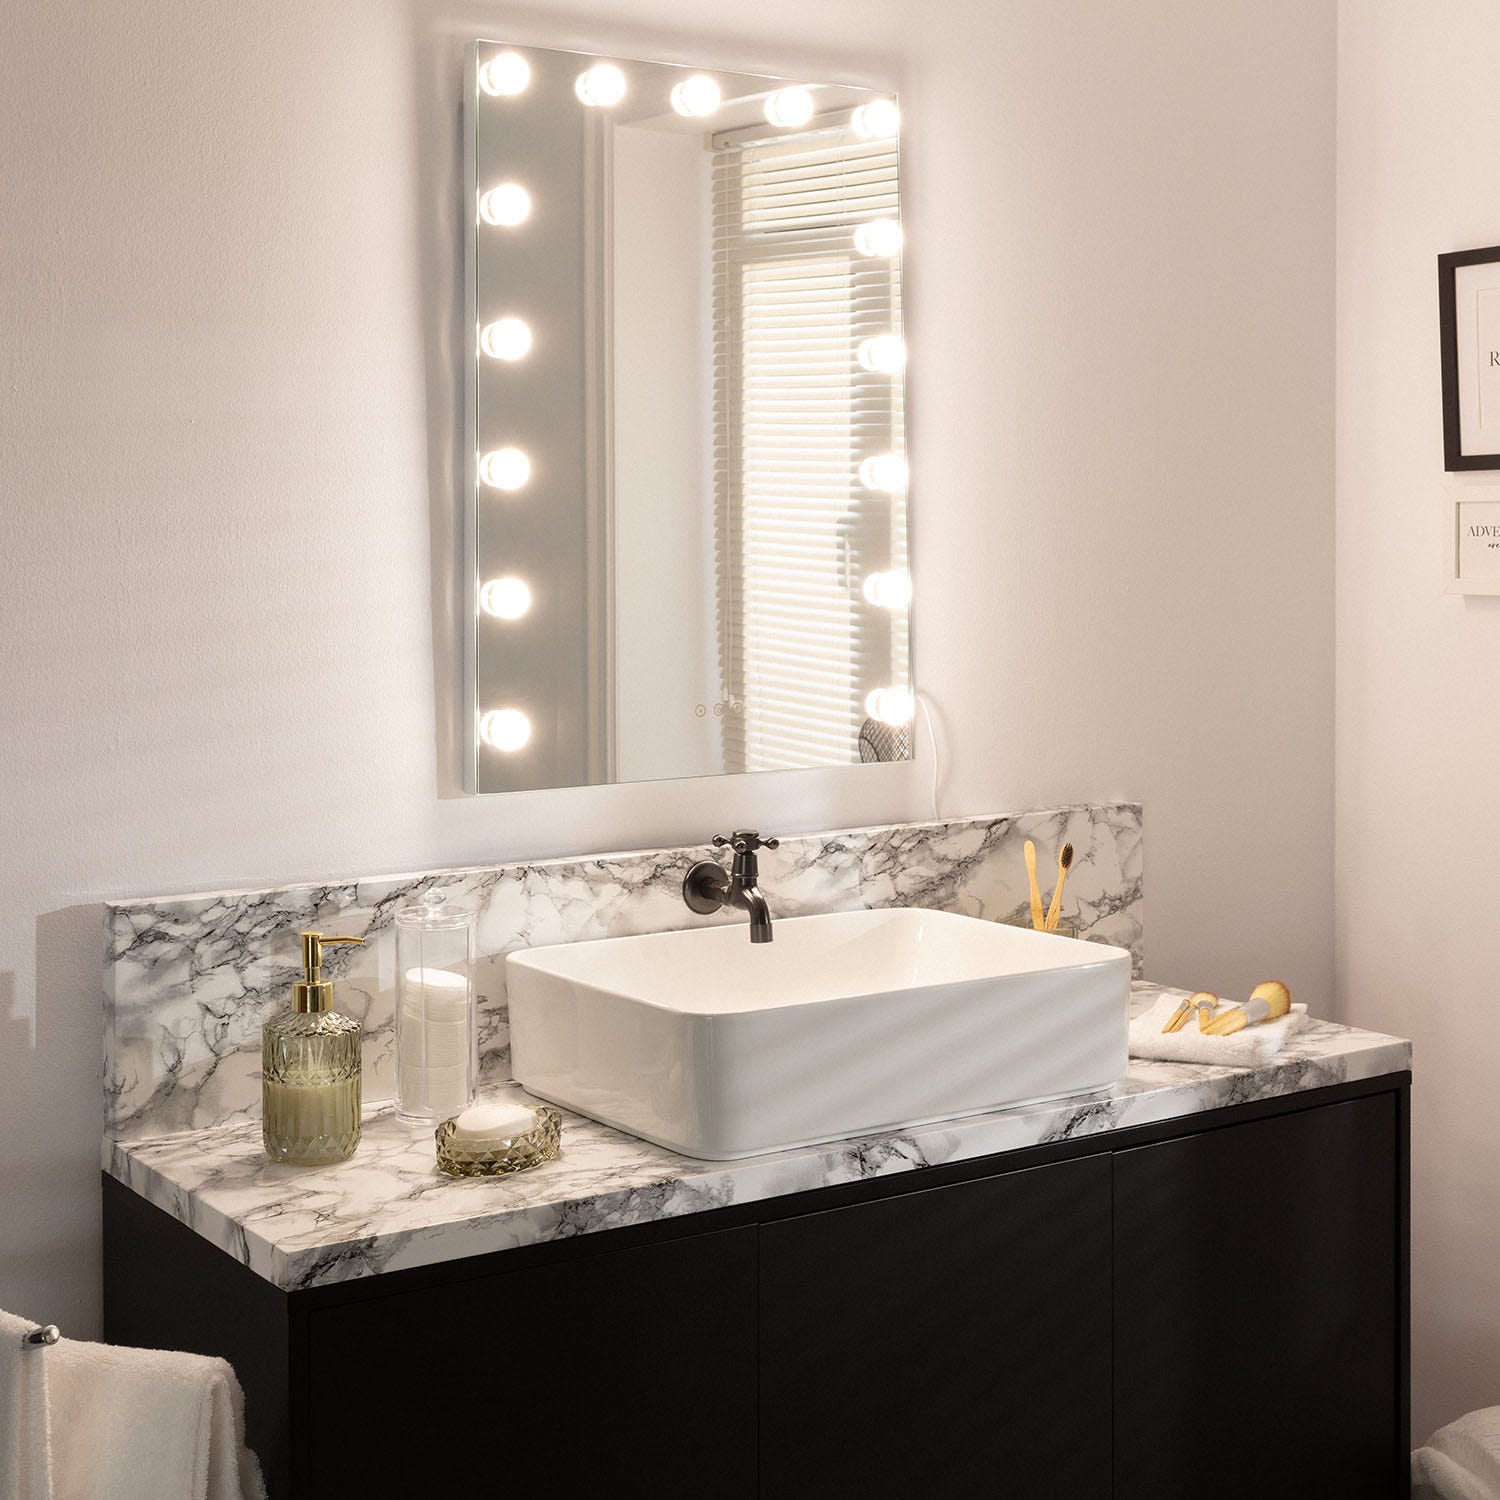 EMKE Hollywood miroir de courtoisie avec lumière, 60x51.6cm rectangulaire  blanc, miroir de coiffeuse pivotant à 360°, avec 3 lumières dimmables